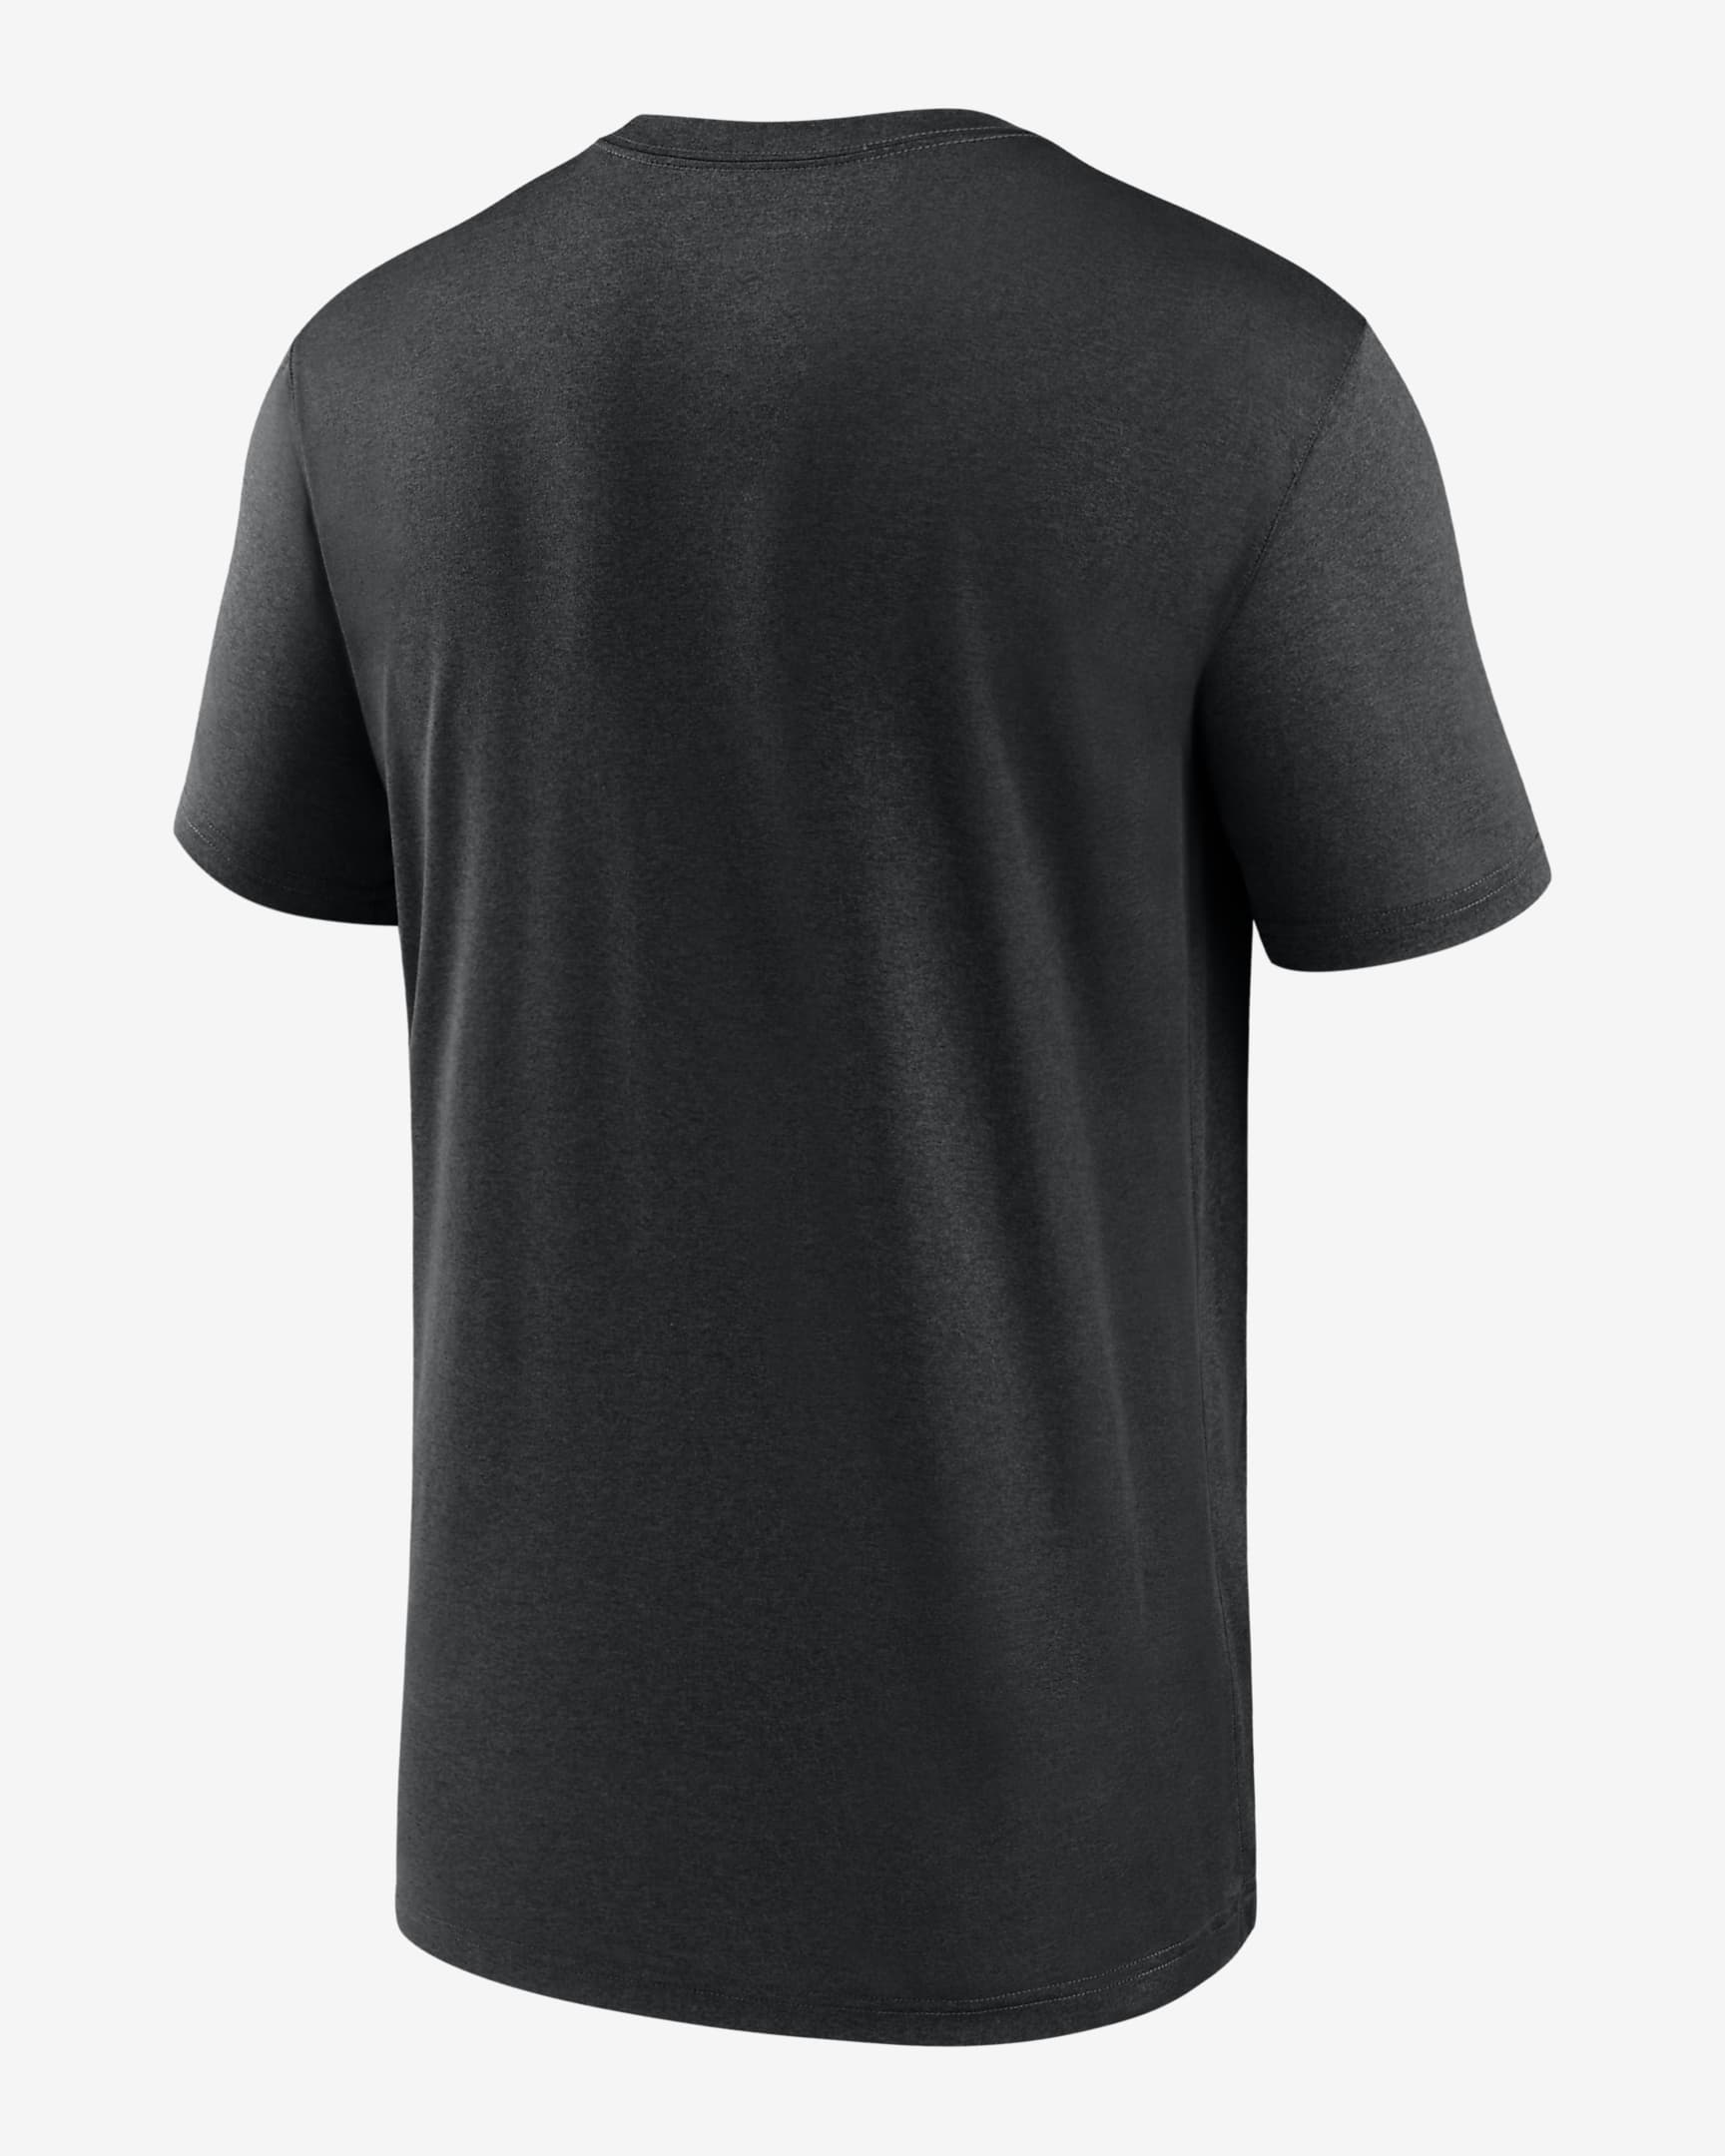 Nike Dri-FIT Icon Legend (NFL New Orleans Saints) Men's T-Shirt. Nike.com